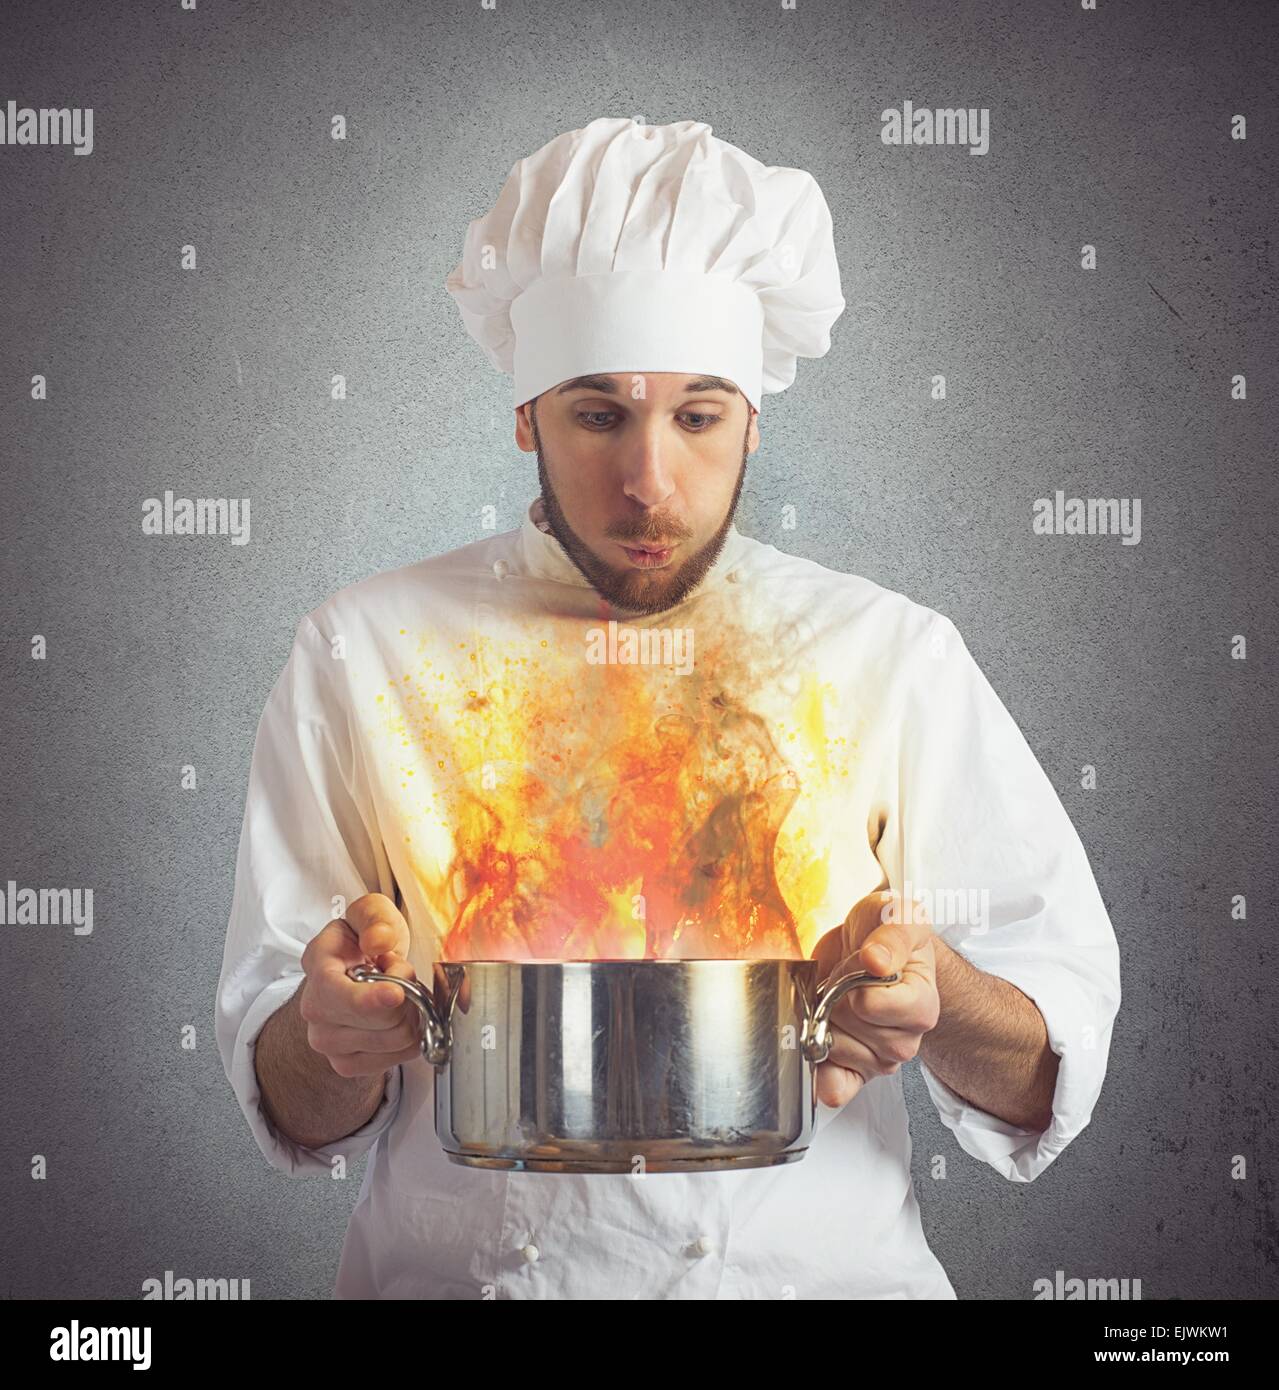 Soufflage Chef aliments brûlés Banque D'Images